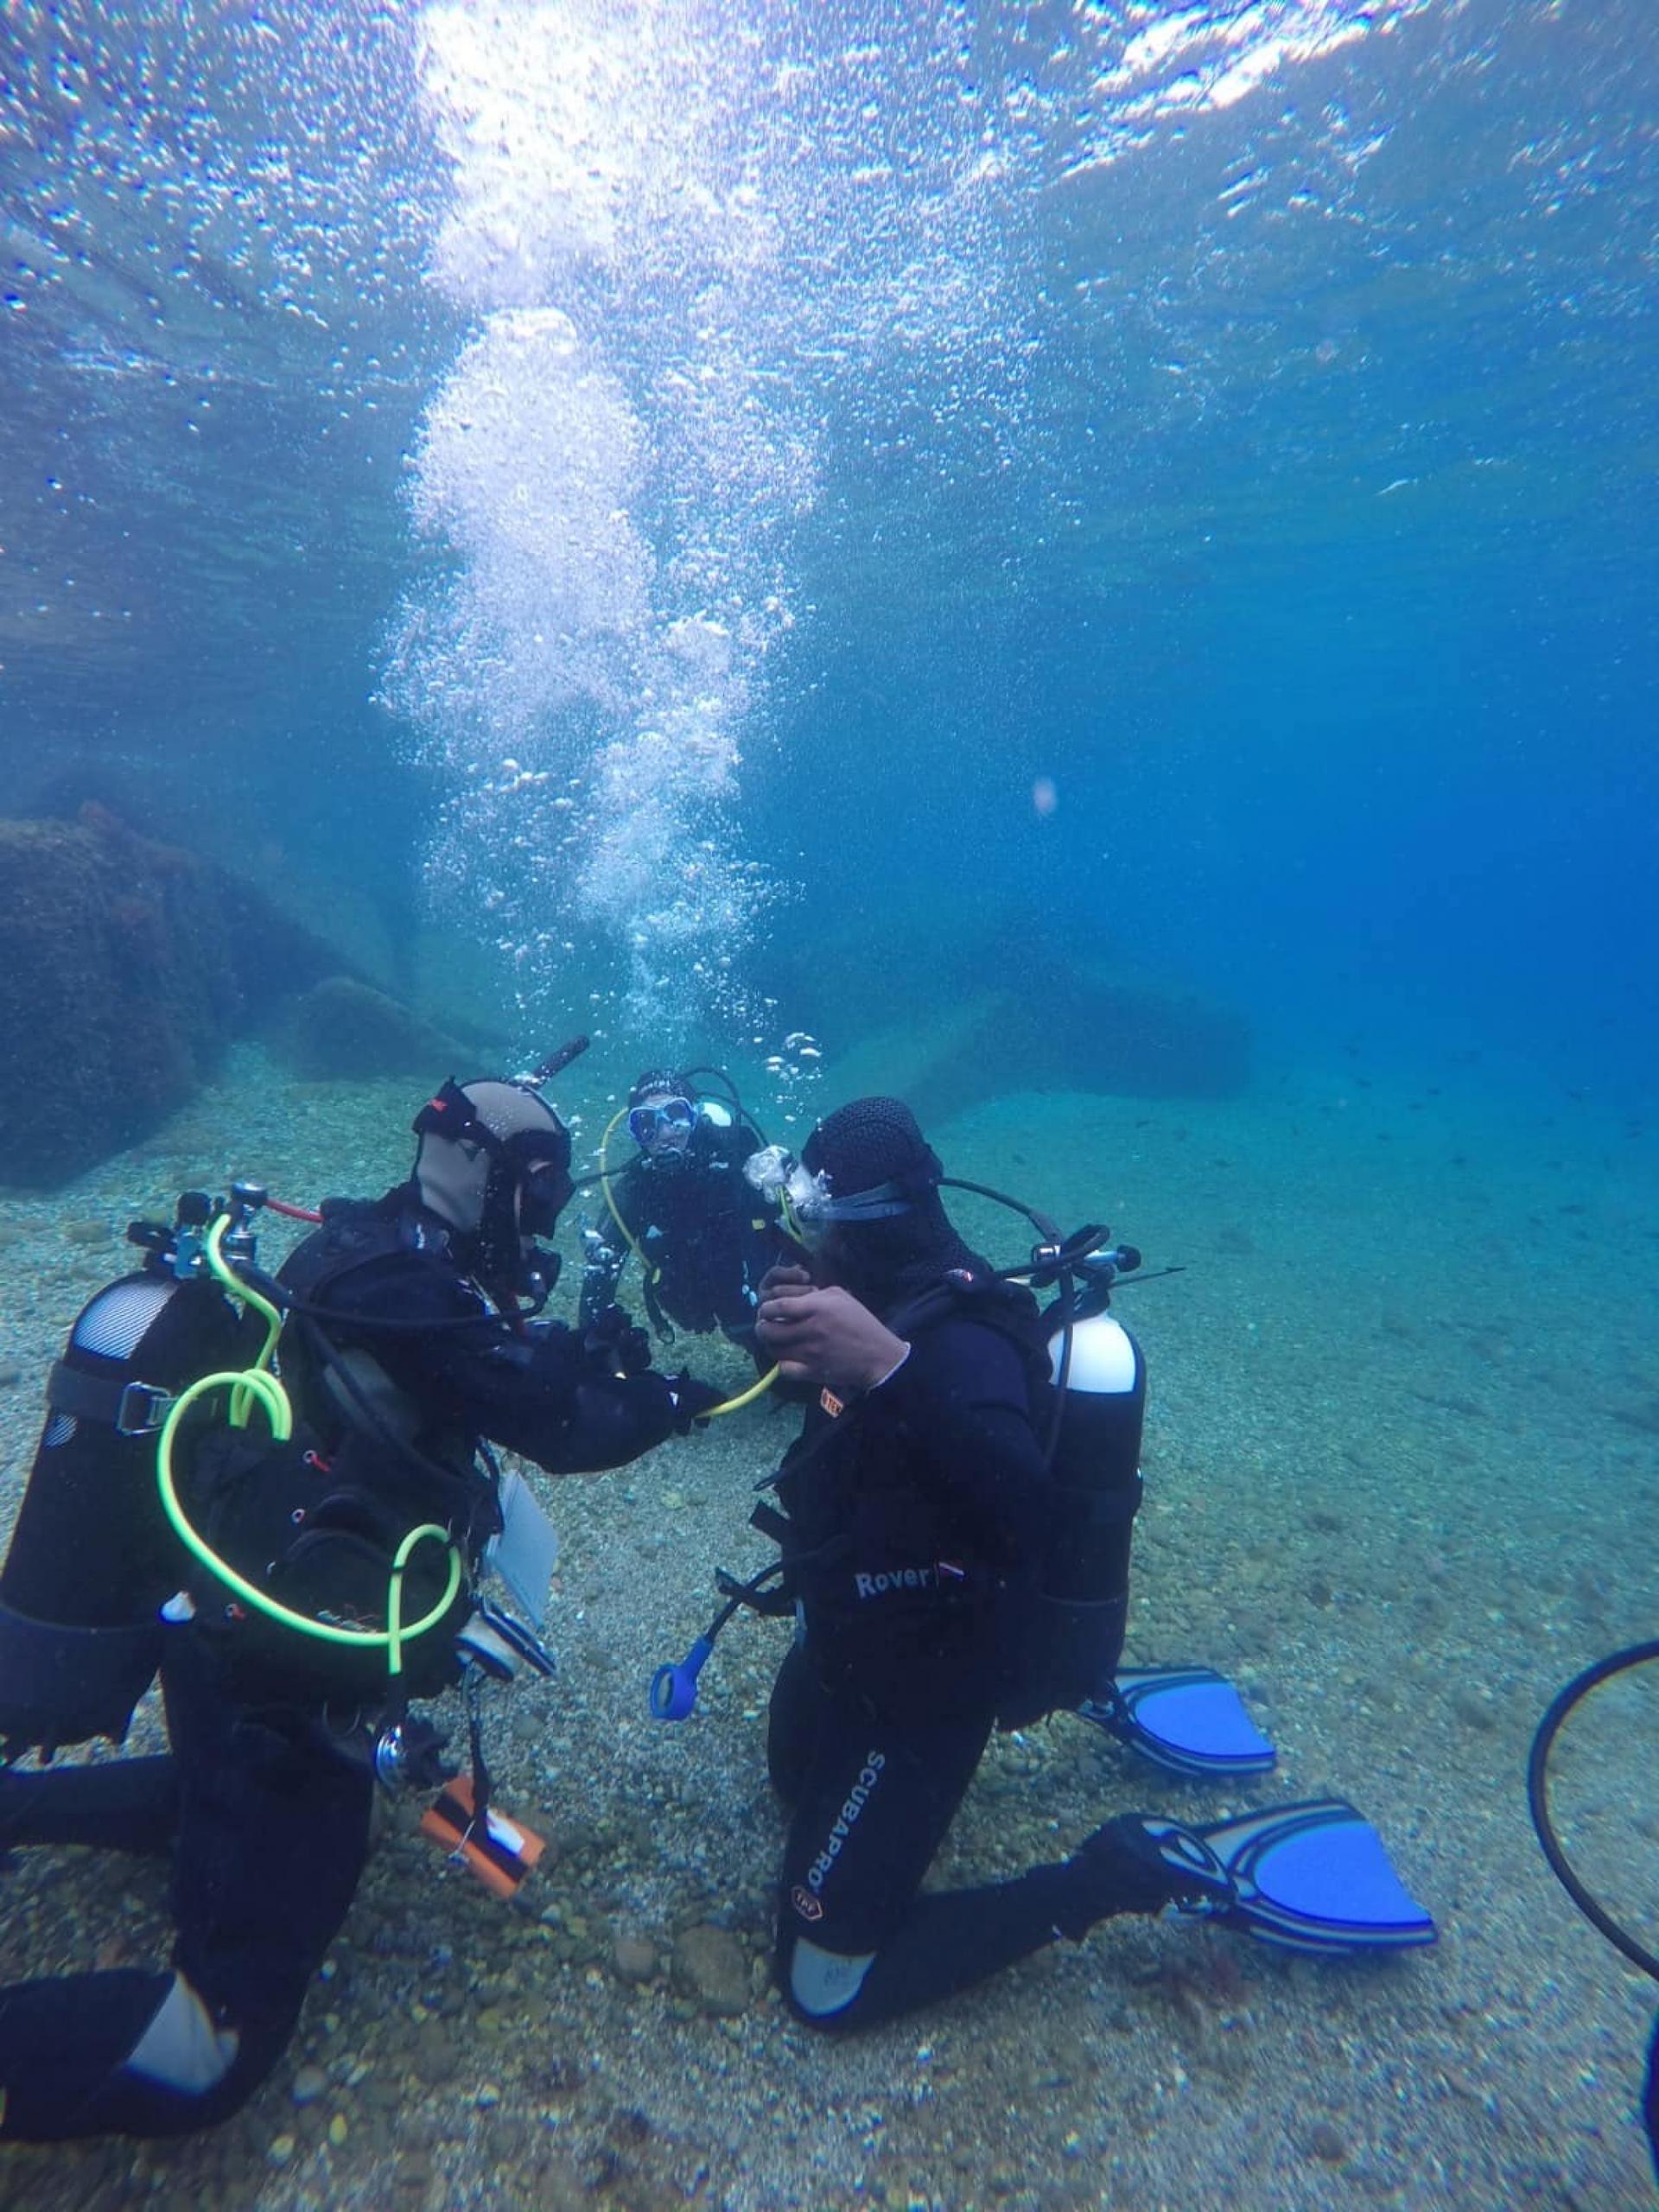 two people underwater in scuba gear. 